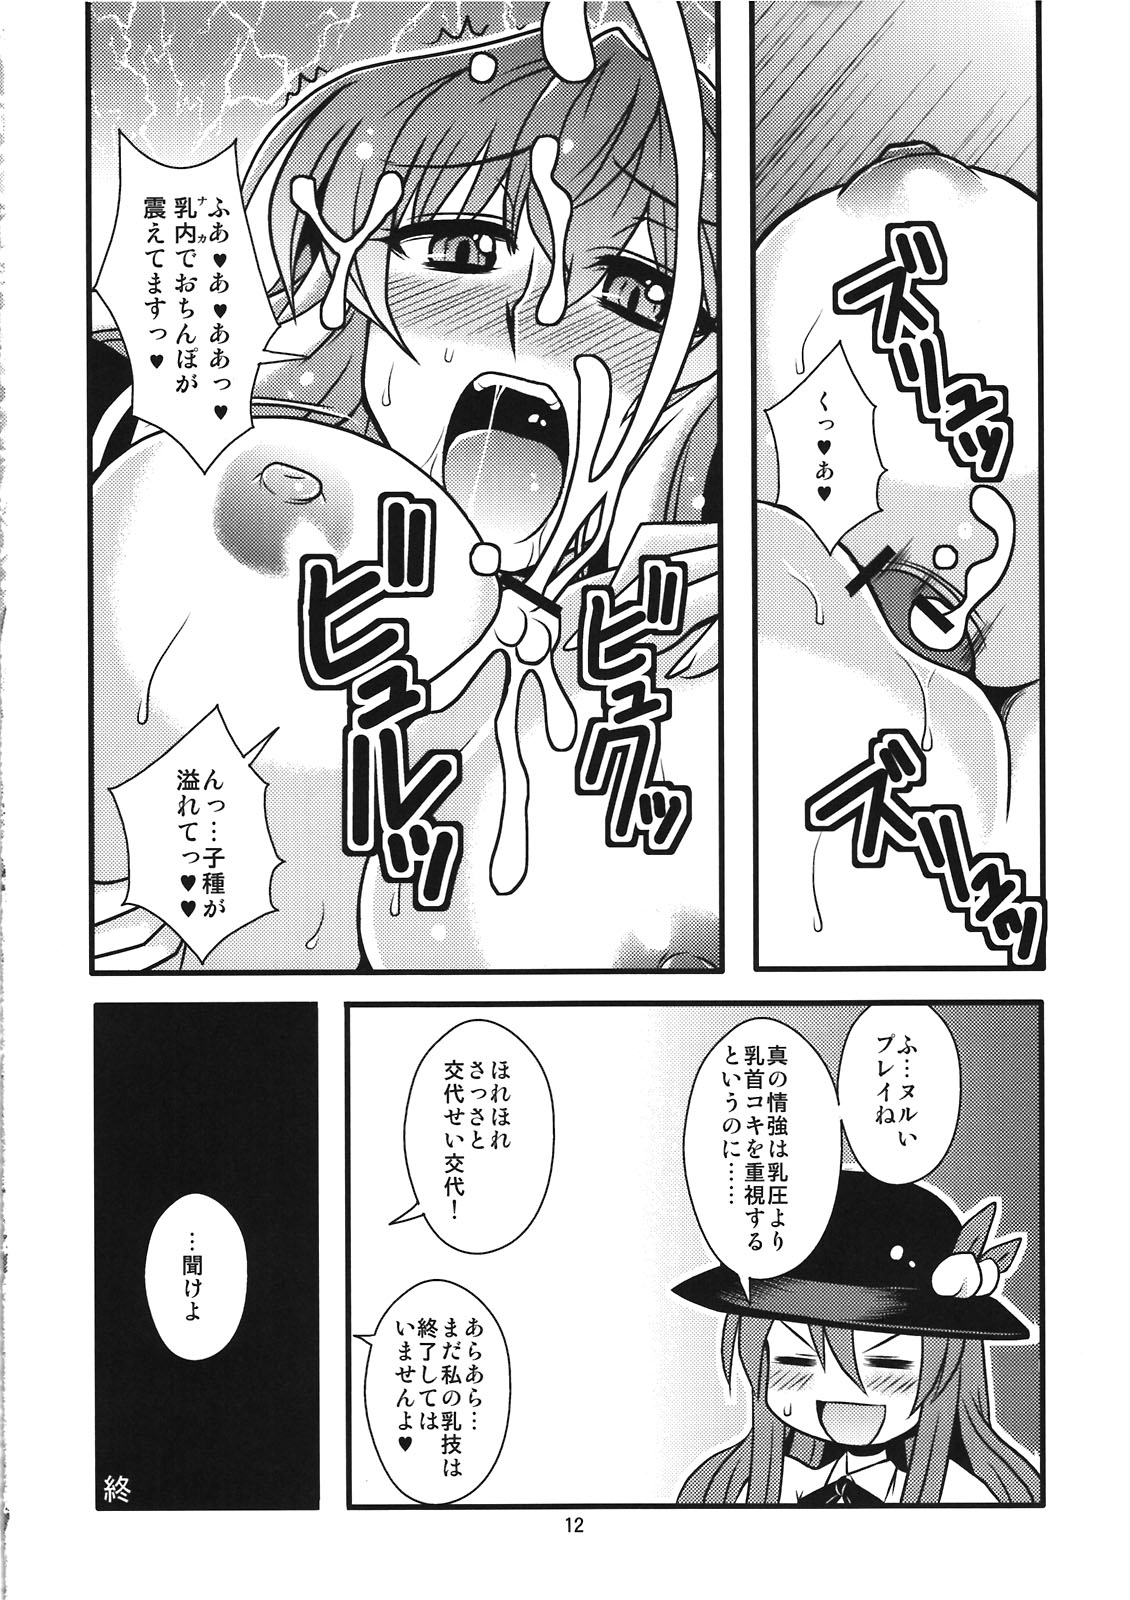 (Kouroumu 7) [BlueMage (Aoi Manabu)] Mune no Naka e Ittemitai to Omoimasenka (Touhou Project) page 14 full